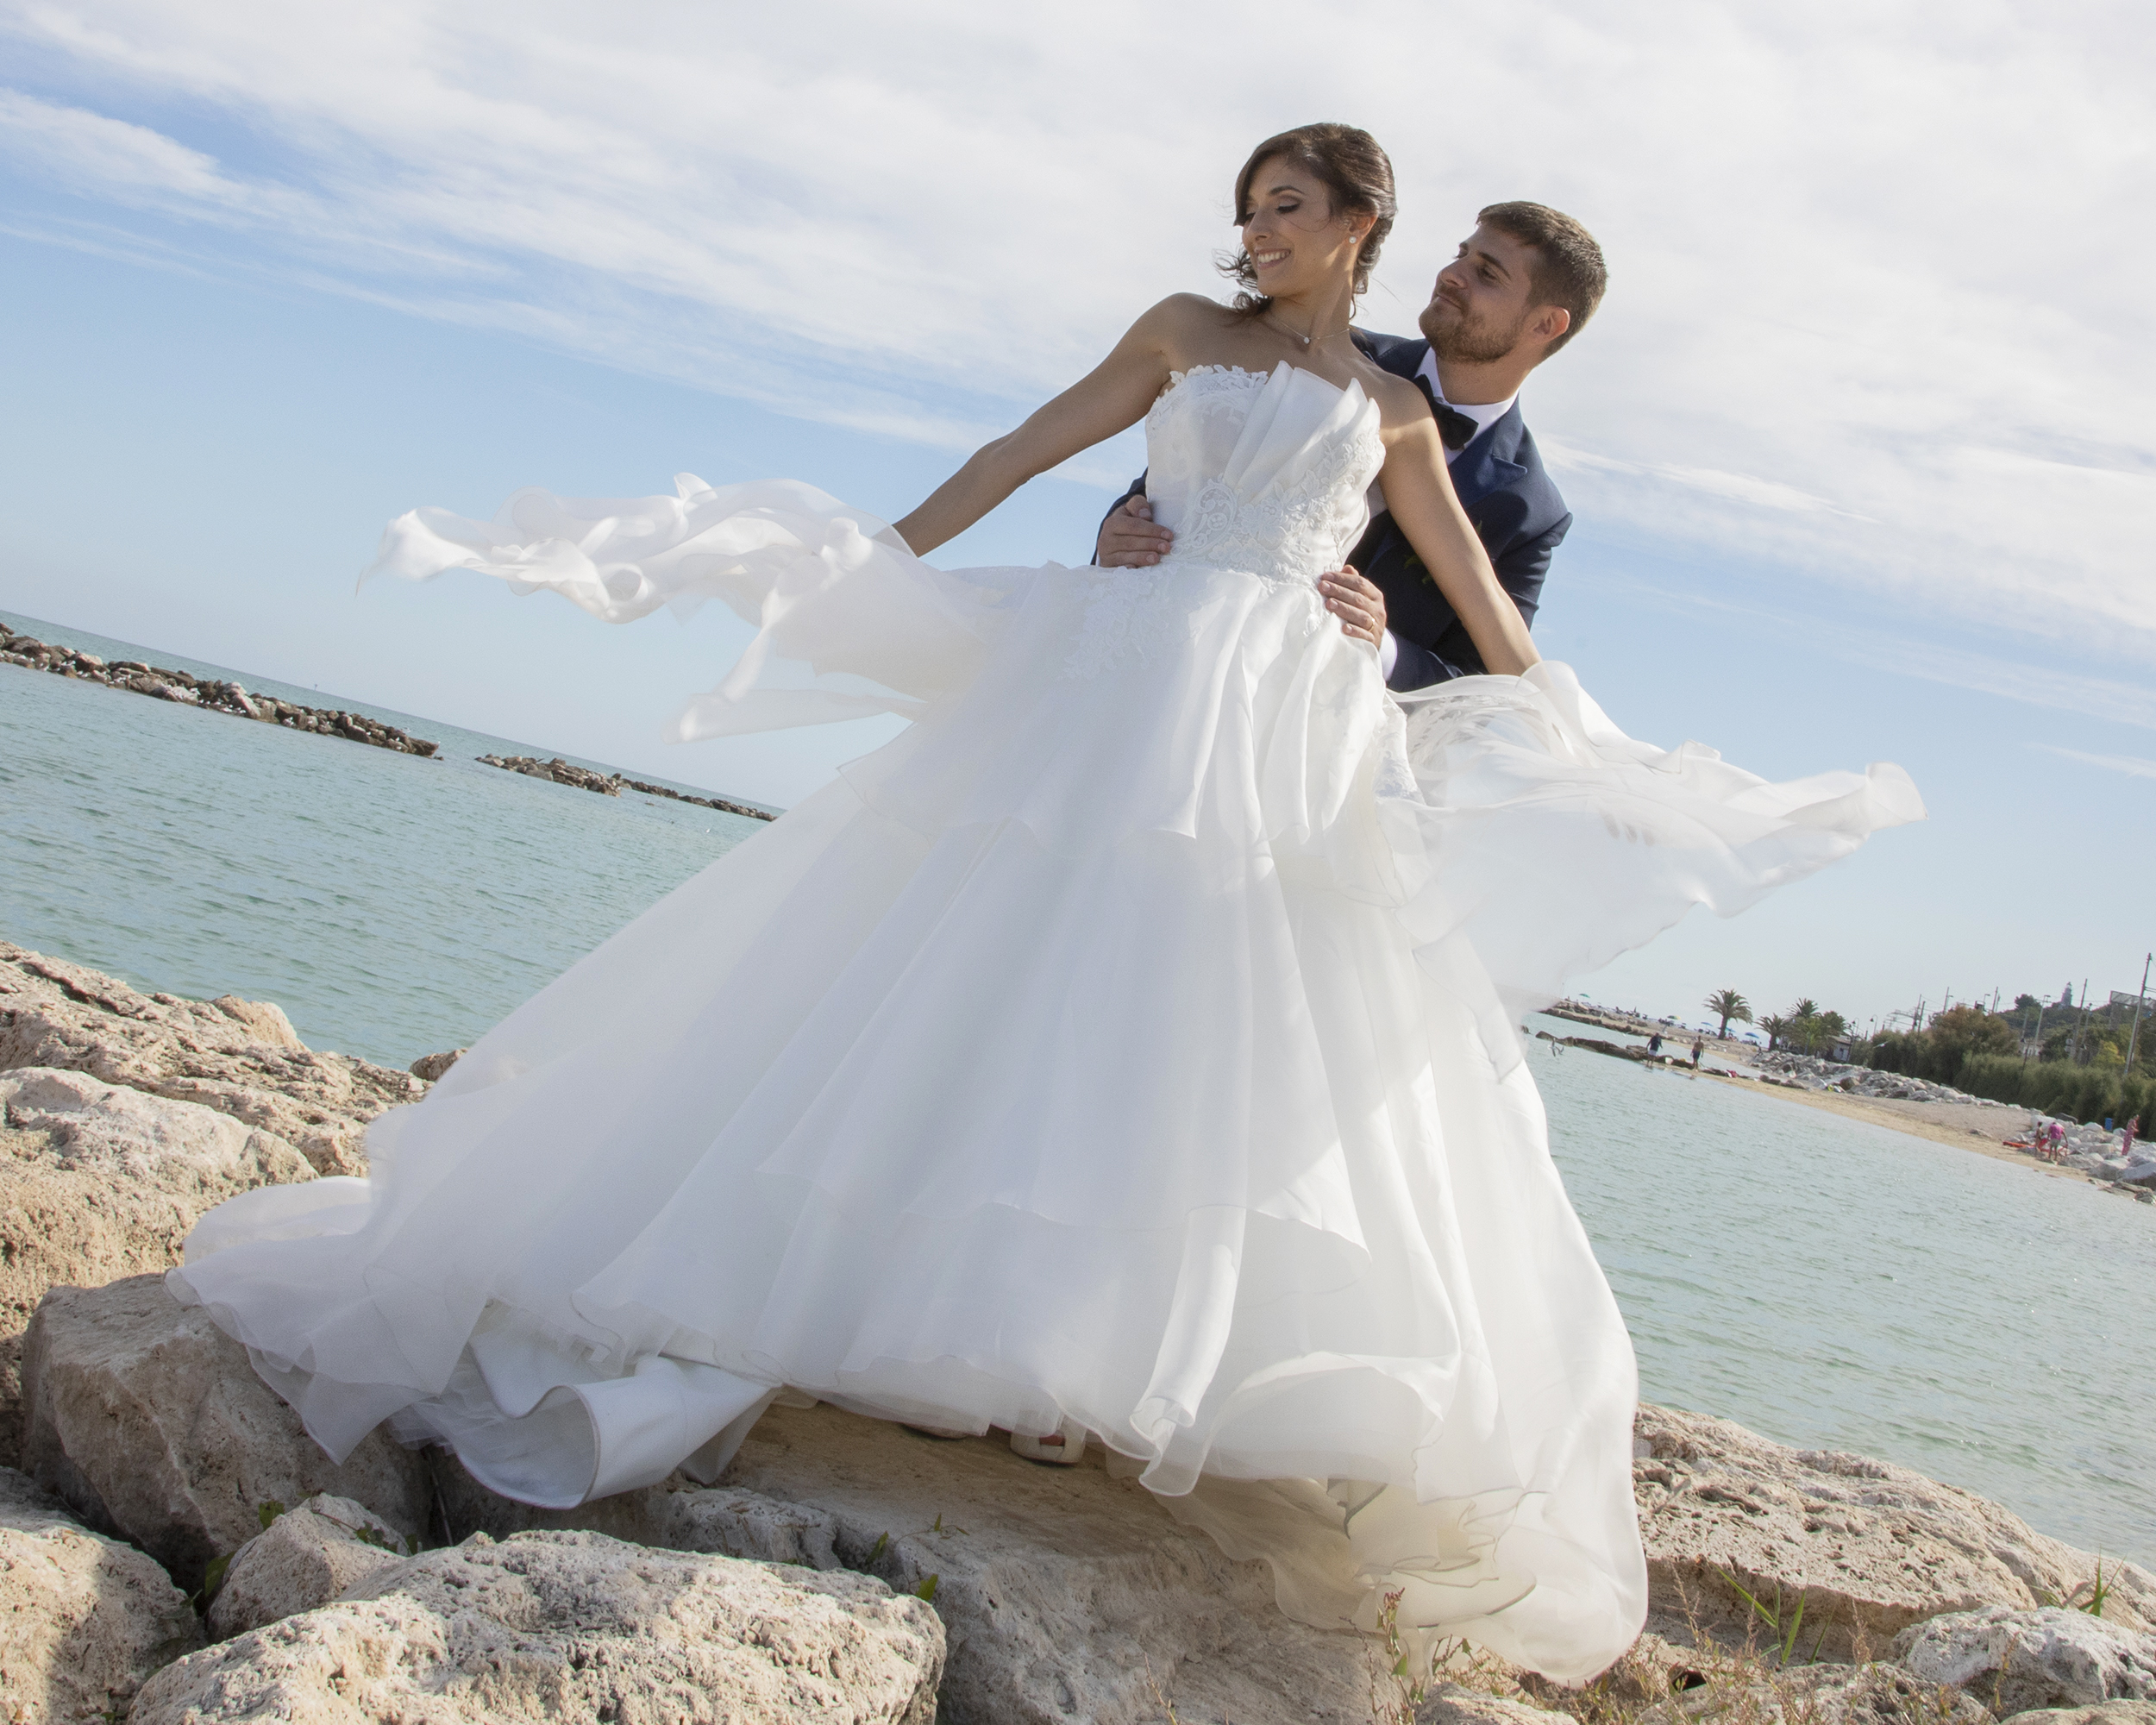 Abito da sposa matrimonio in spiaggia: ecco i modelli perfetti!